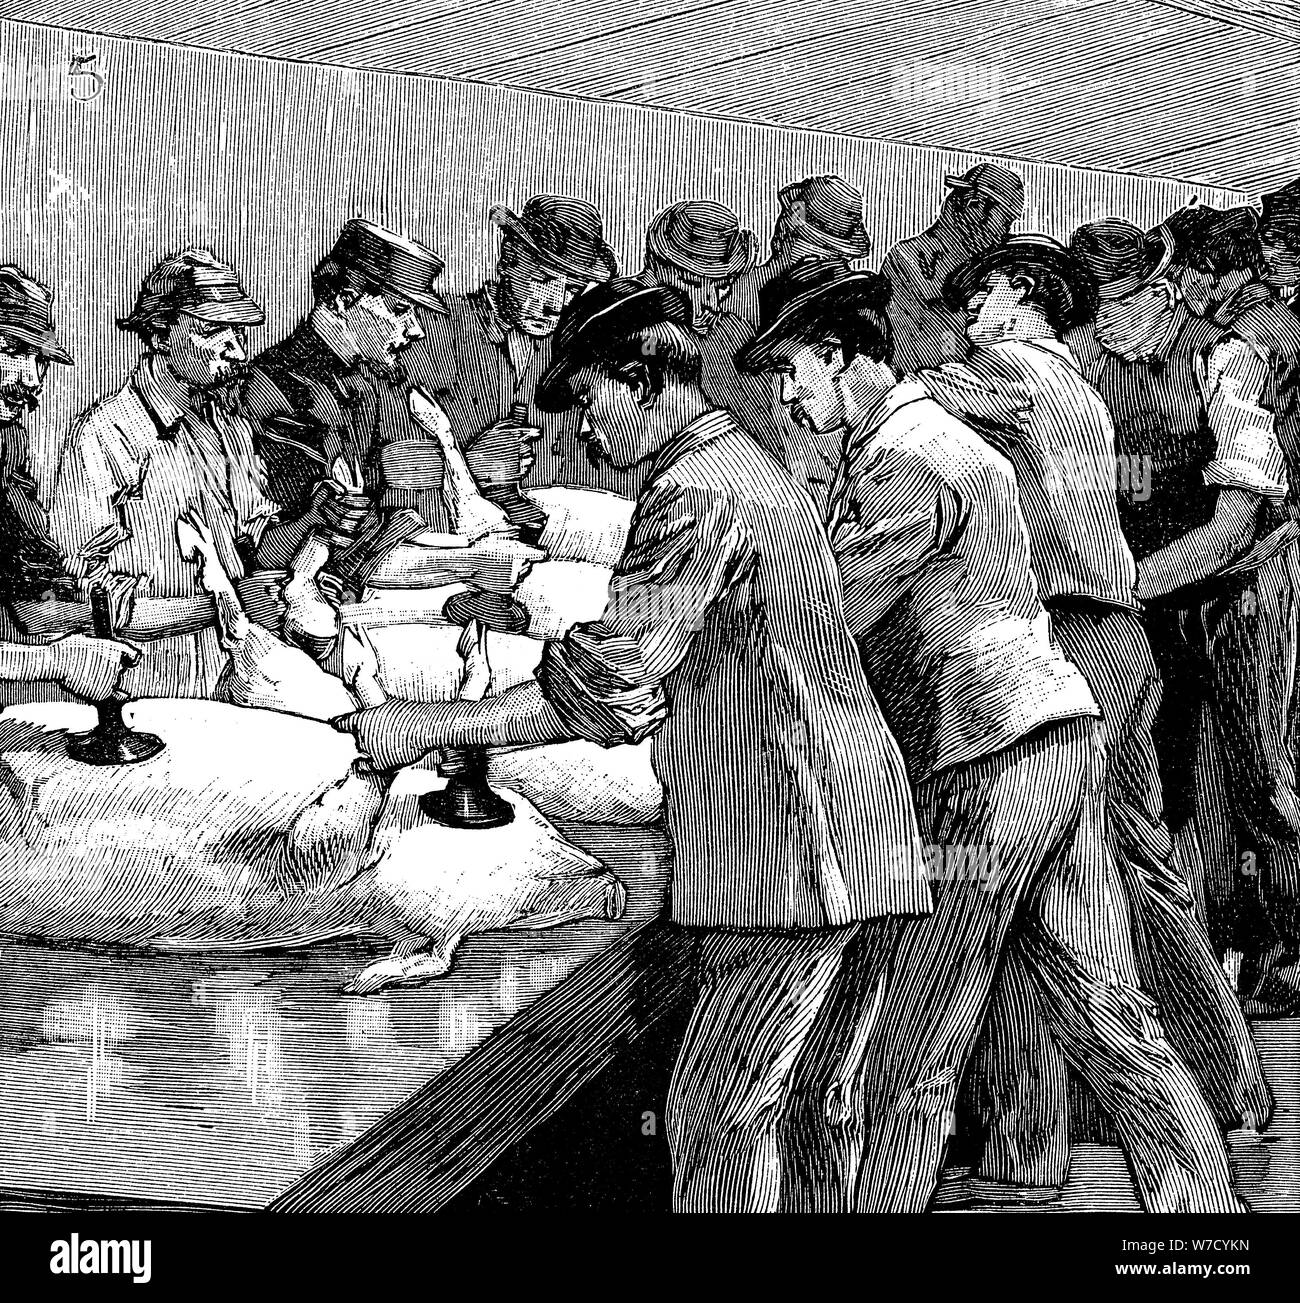 L'entreprise Armor abattoir de porcs, Chicago, Illinois, USA, 1892. Artiste : Inconnu Banque D'Images